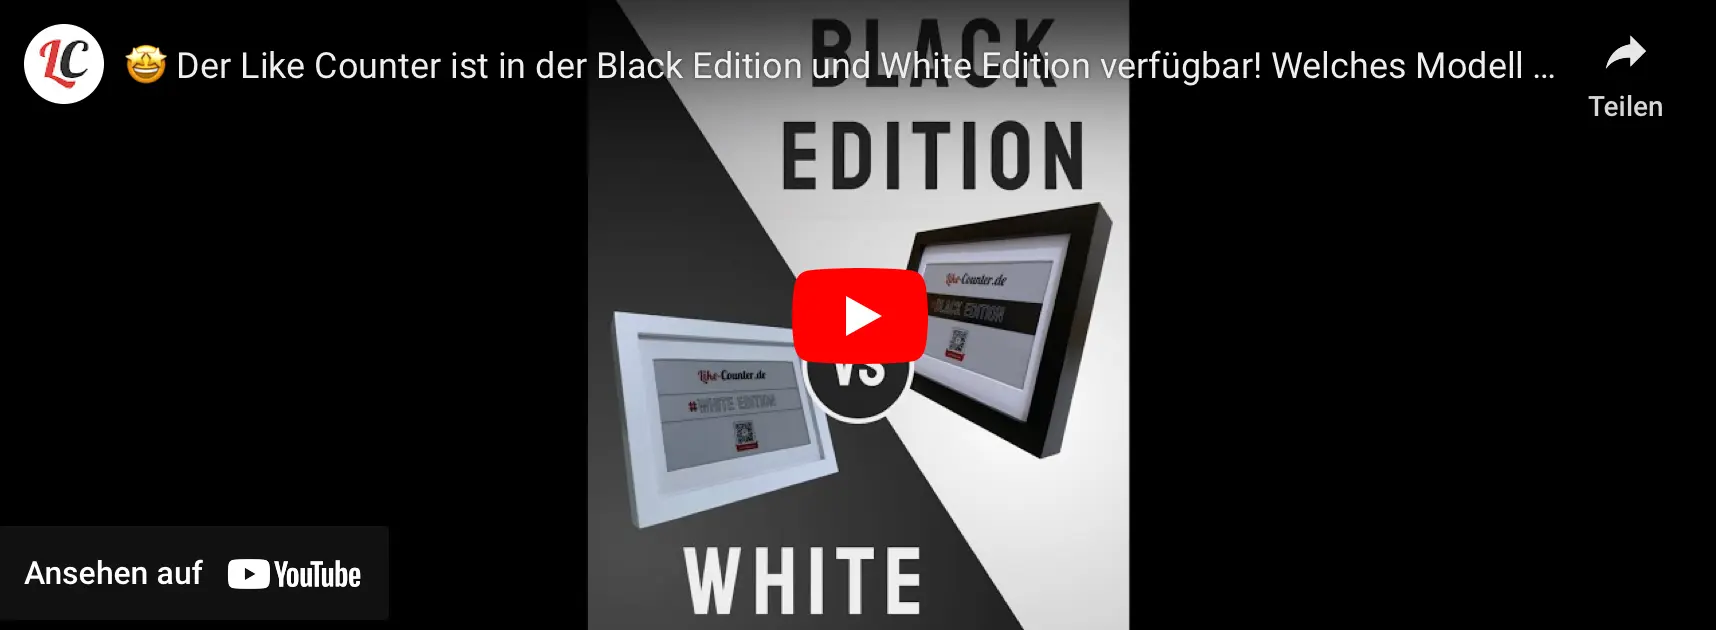 🤩 Der Like Counter ist in der Black Edition und White Edition verfügbar! Welches Modell magst Du? - https://youtube.com/embed/UhJFJYxcmLg